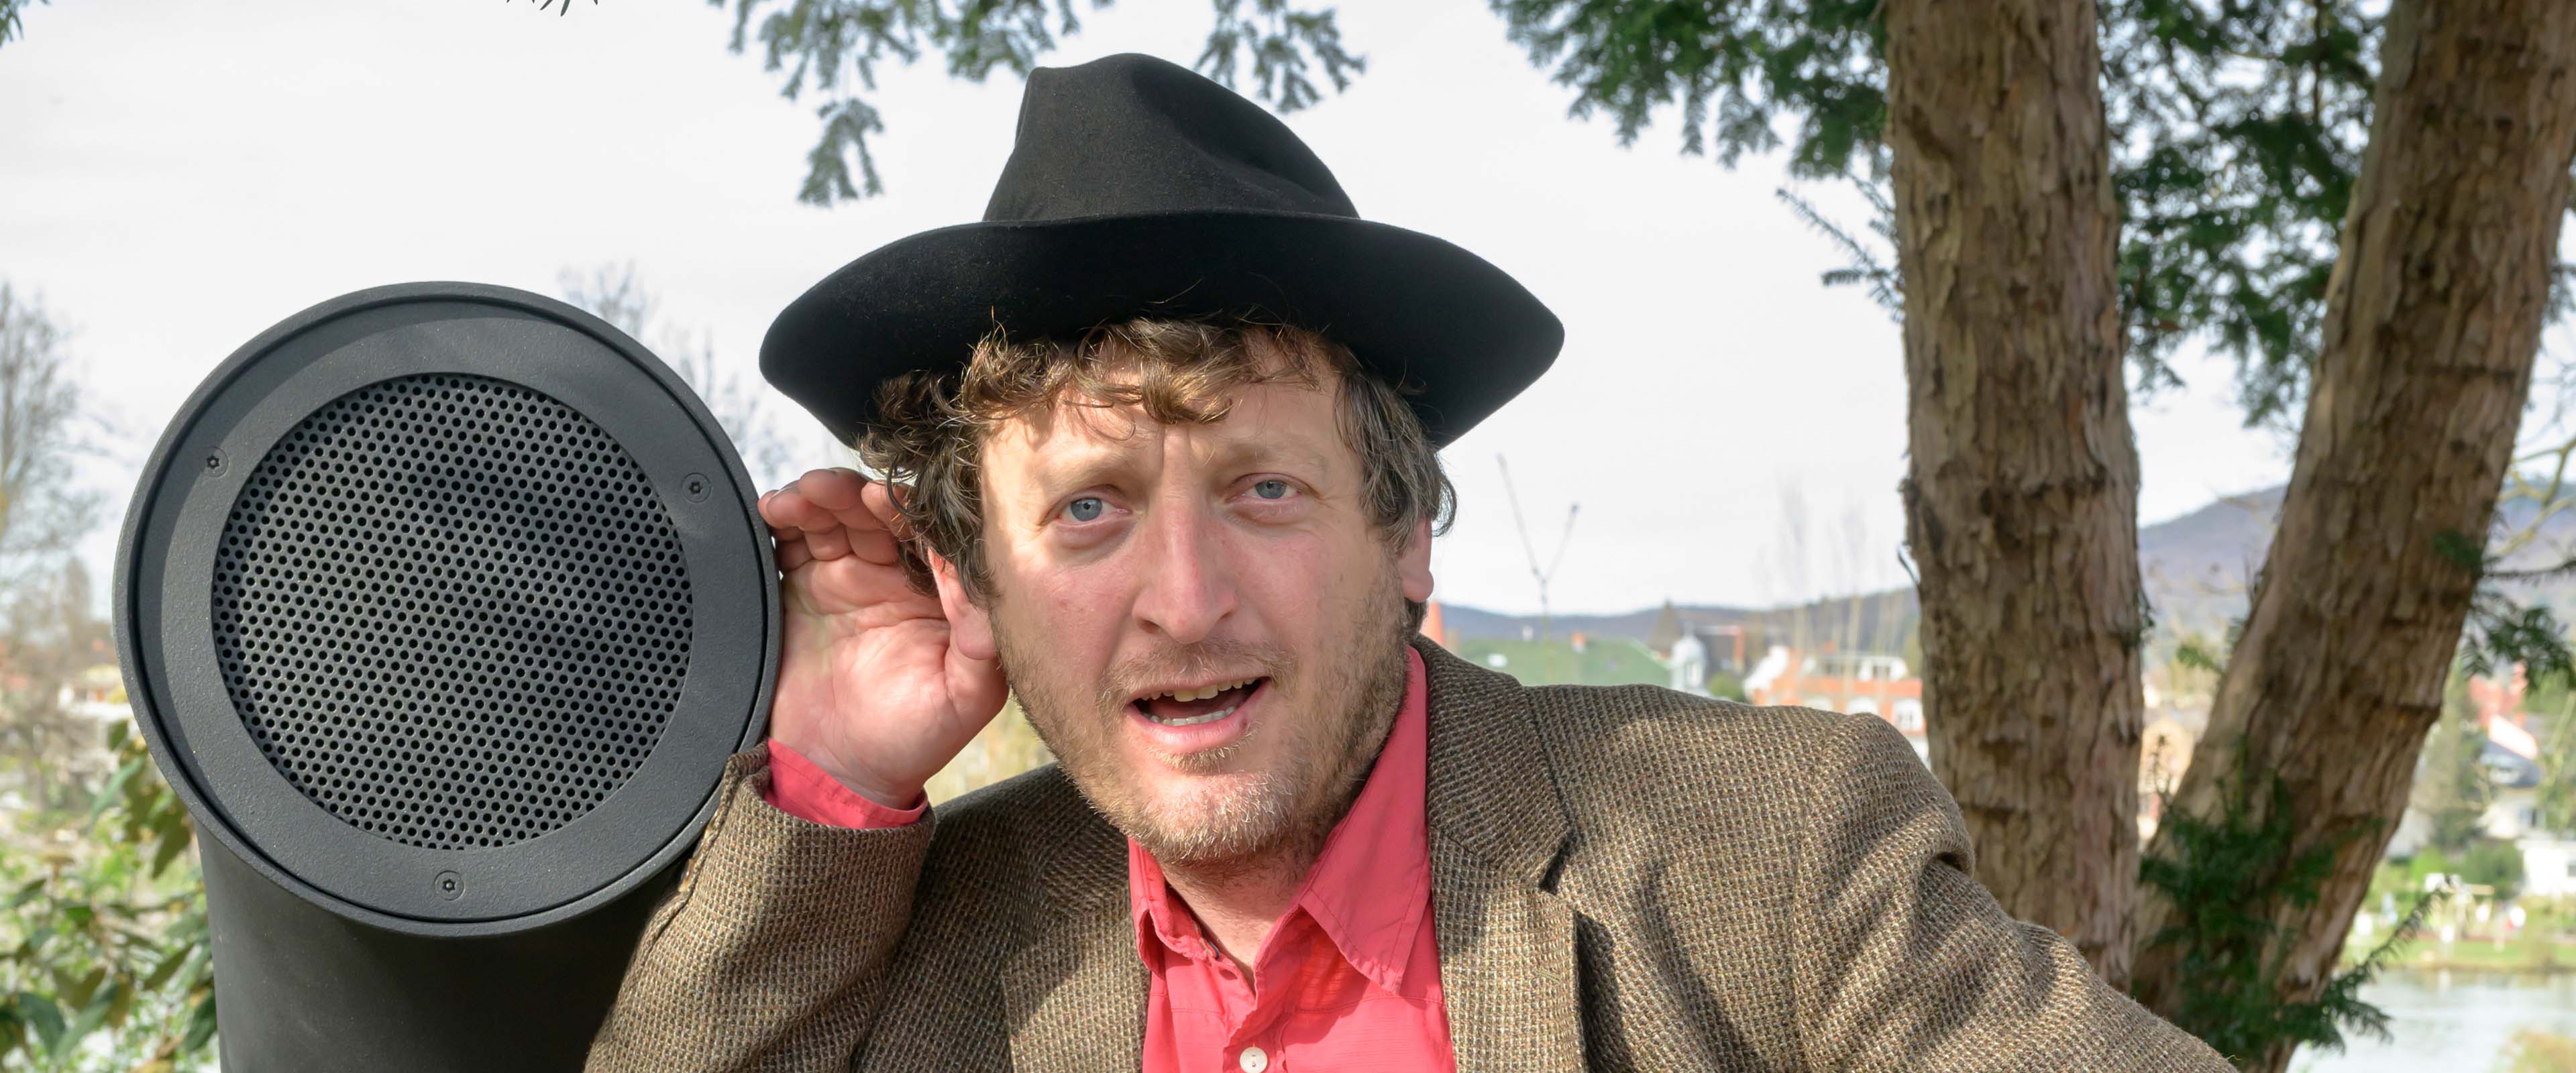 Erfinder Ondřej Kobza, ein Mann mit Hut, steht am Poesiomat und lauscht